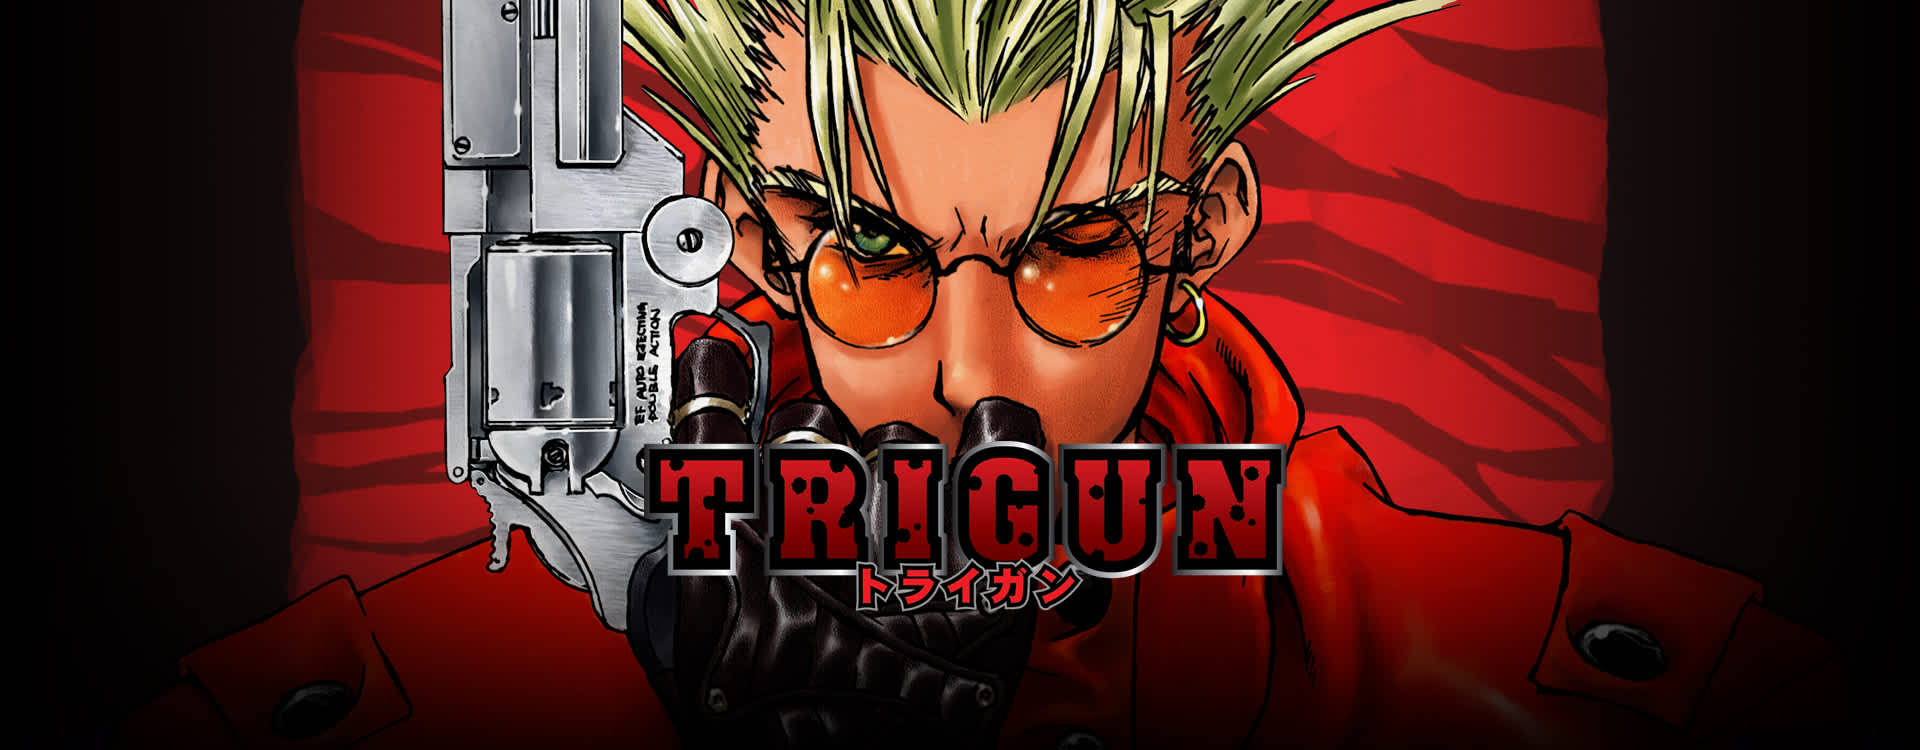  anime cyberpunk trigun